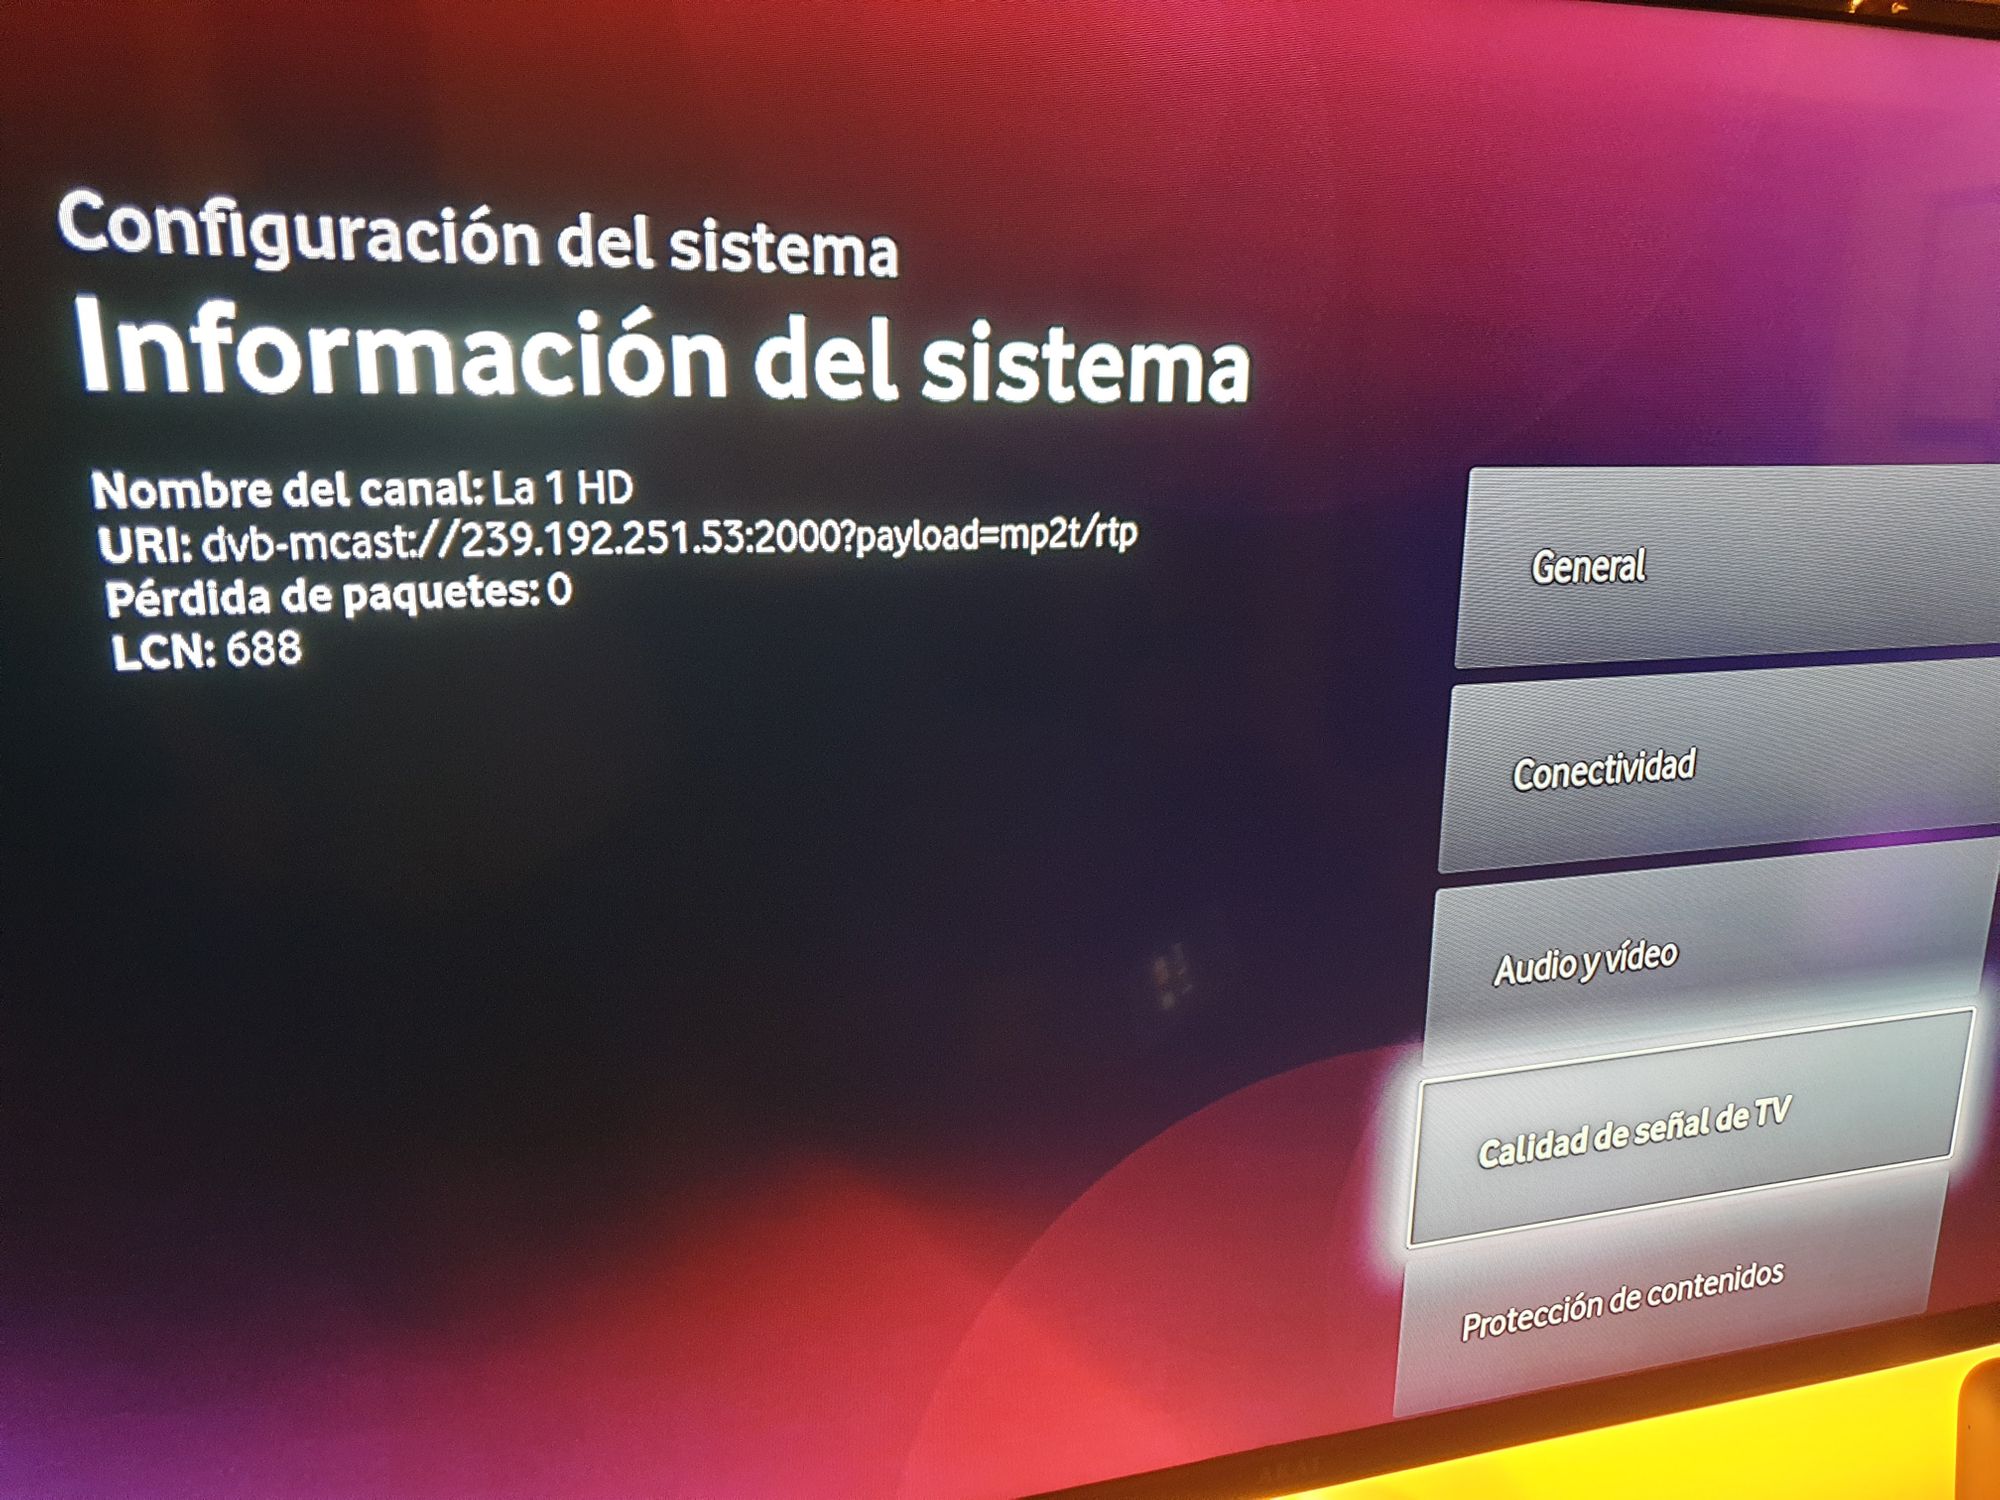 Accessing Vodafone España (NEBA) IPTV via VLC